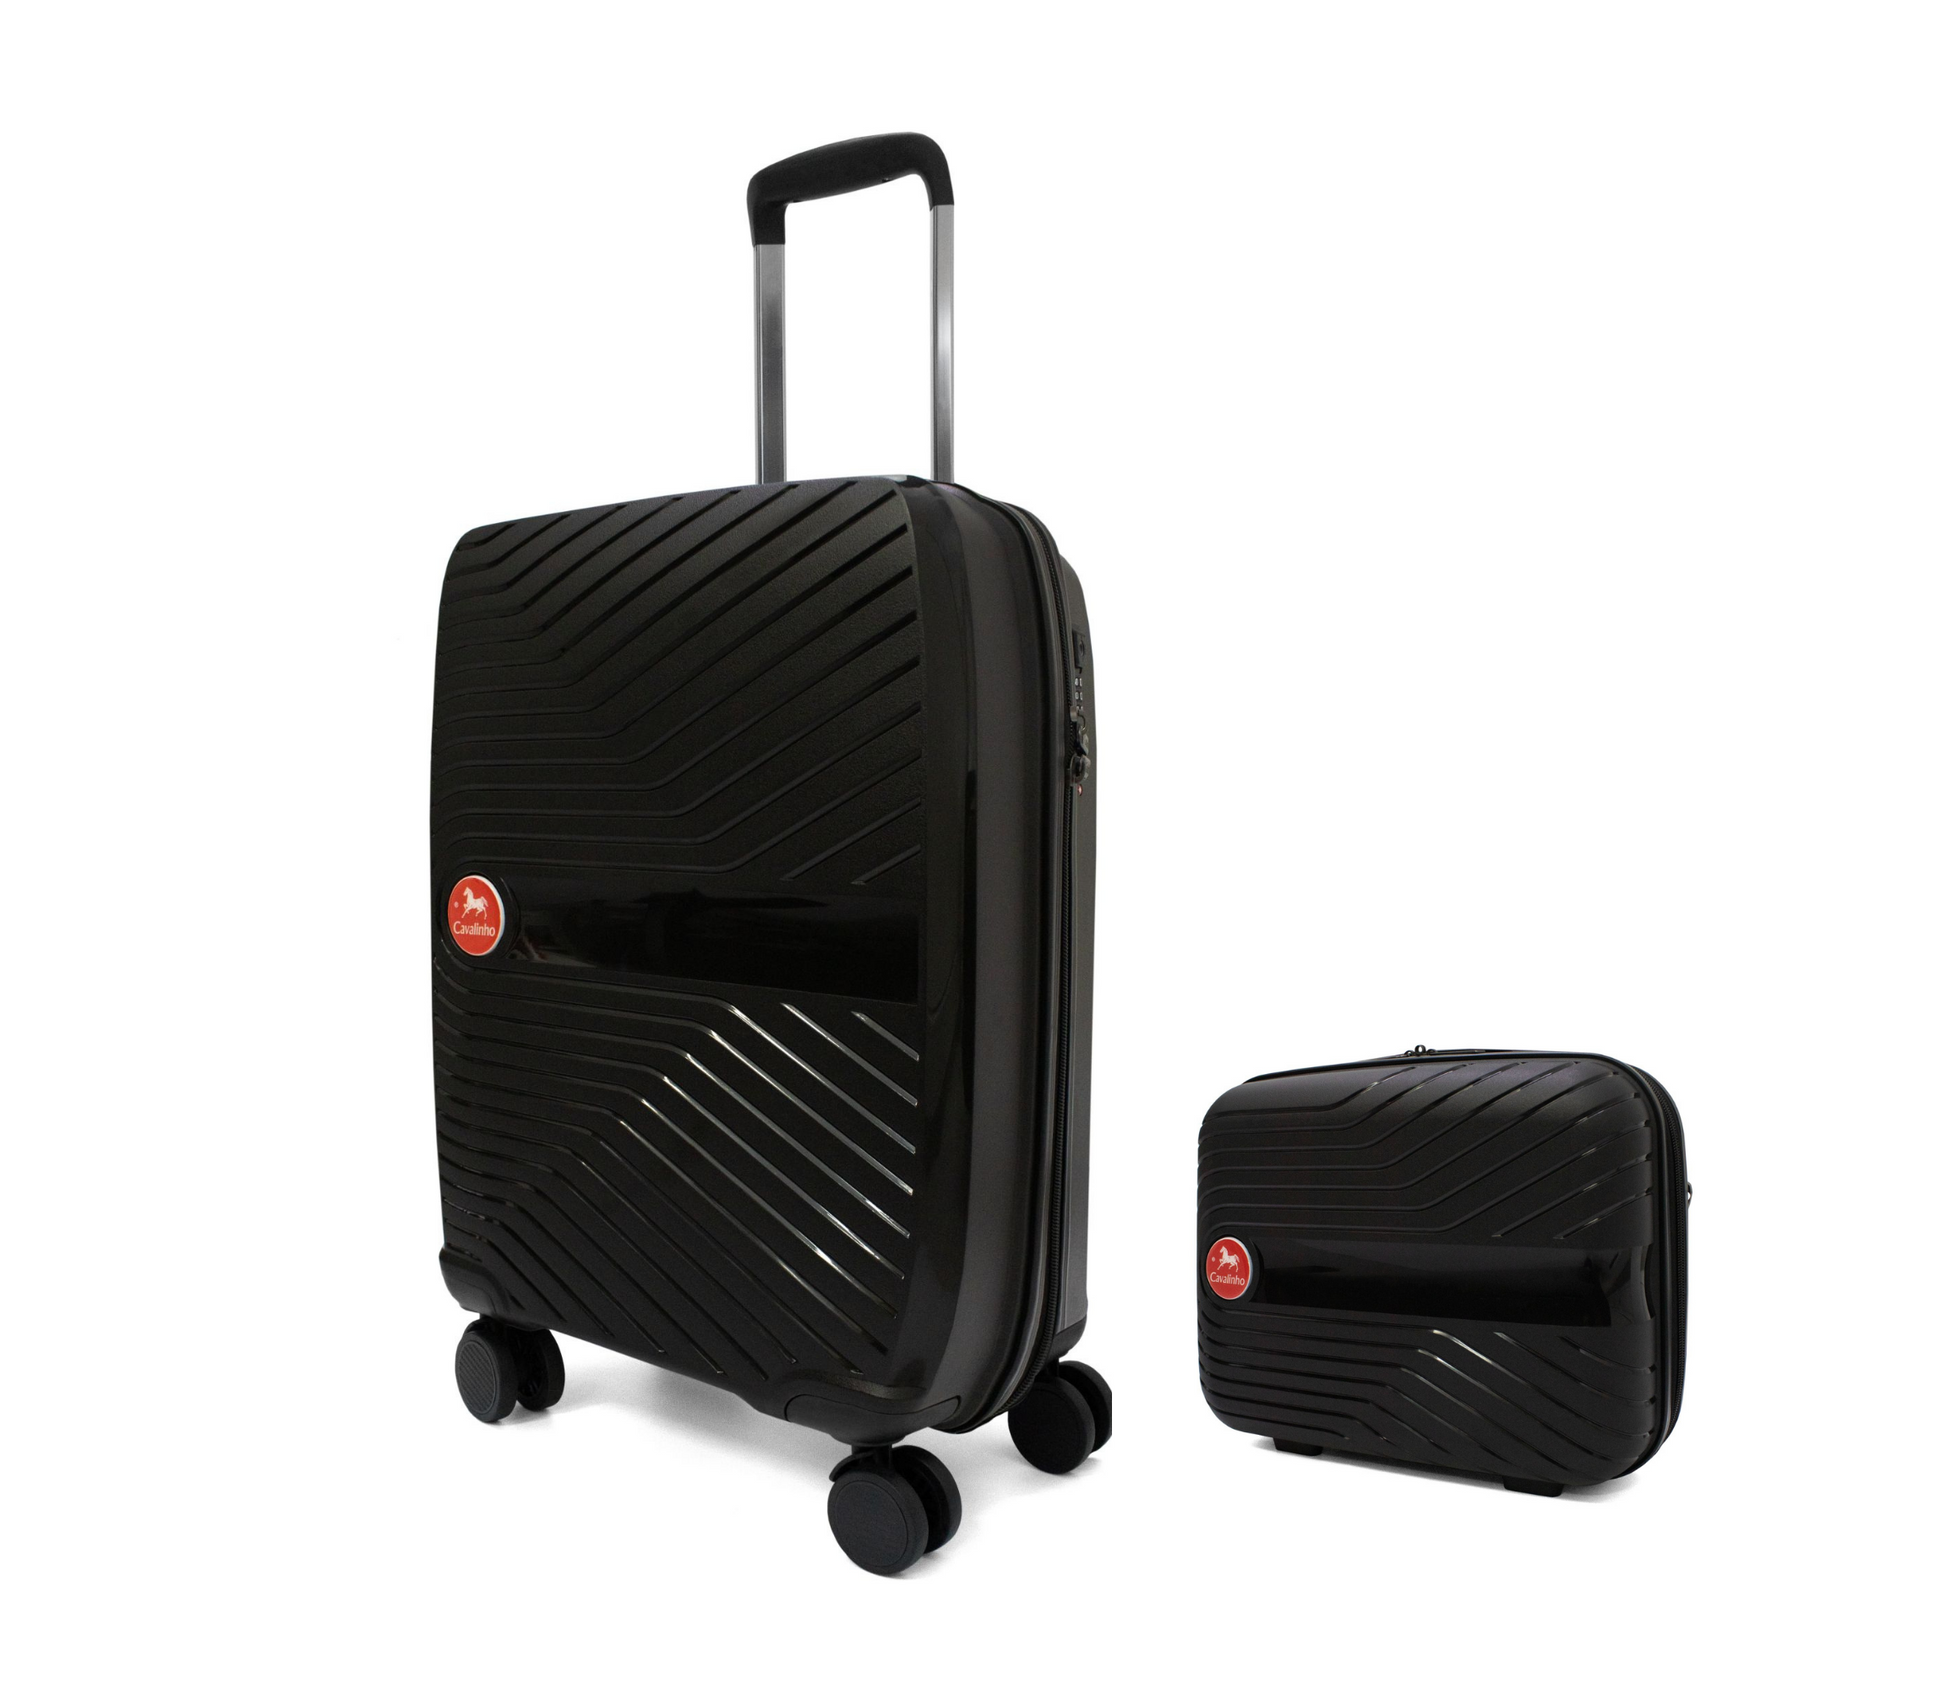 Cavalinho Canada & USA Colorful 2 Piece Luggage Set (15" & 19") - Black Black - 68020004.0101.S1519._3